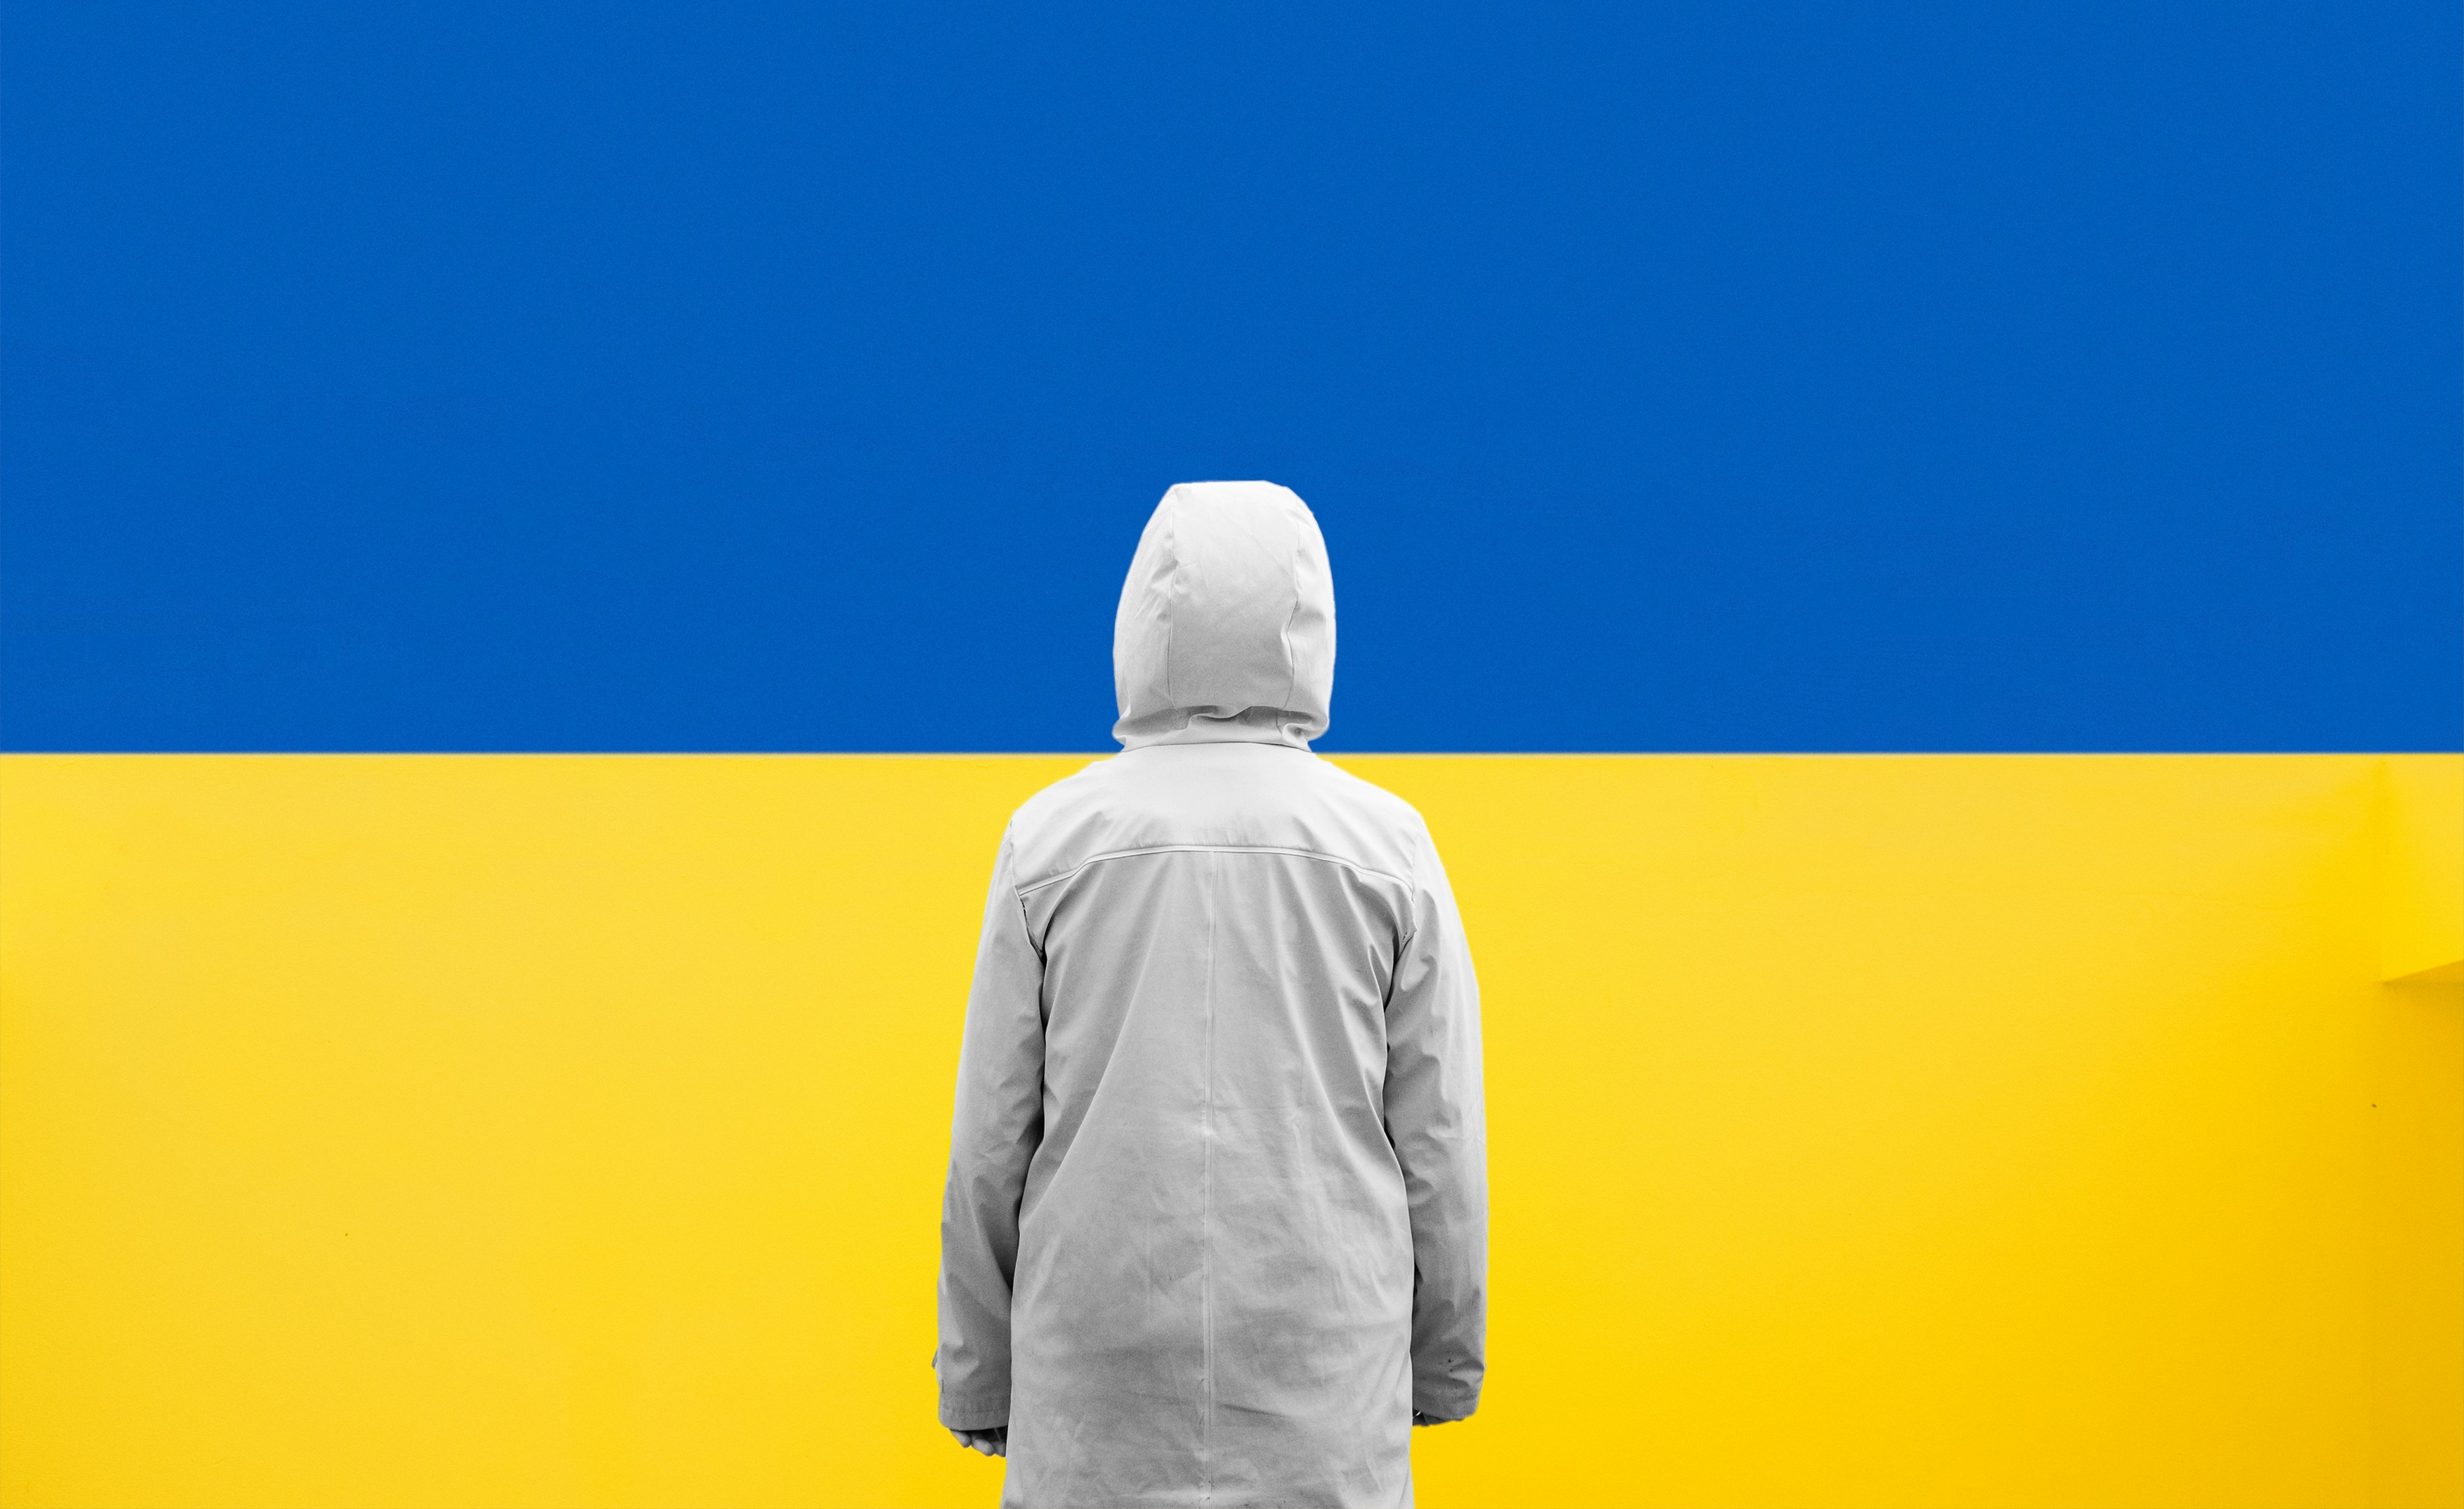 SaveTheChildren, donations: https://donate.savethechildren.org/en/donate/emergency-ukraine